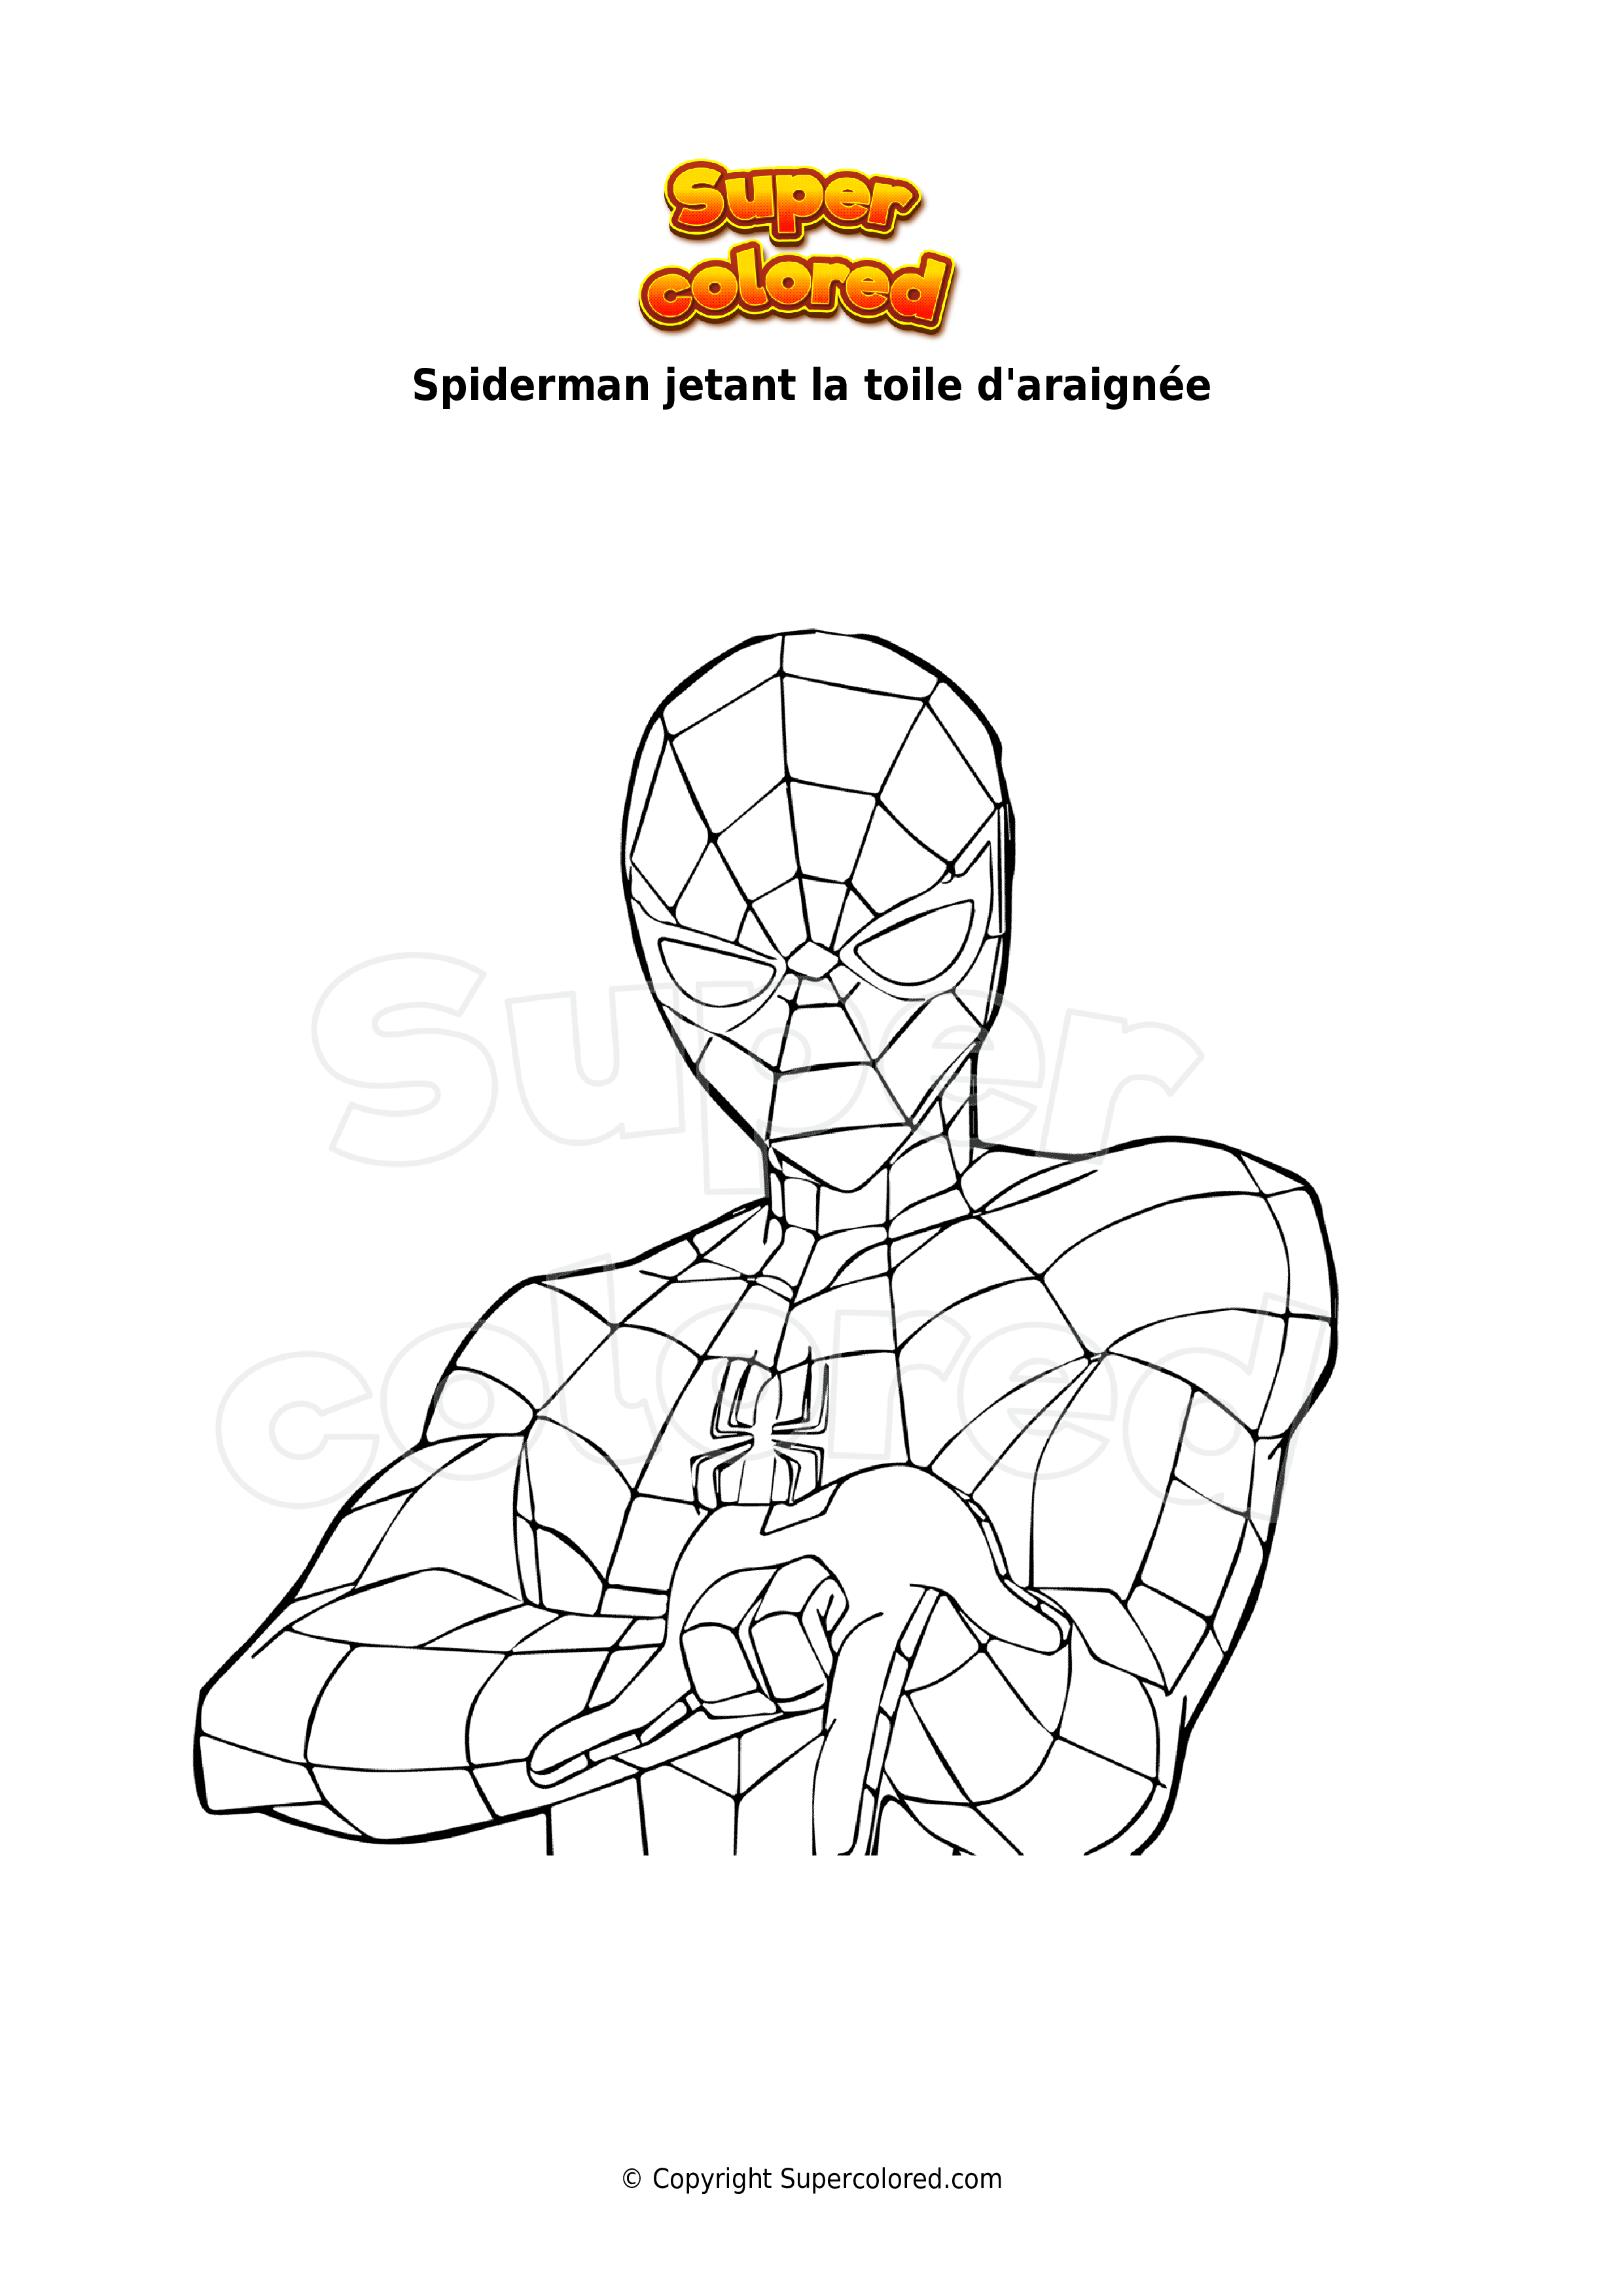 Coloriage Spiderman dans sa toile